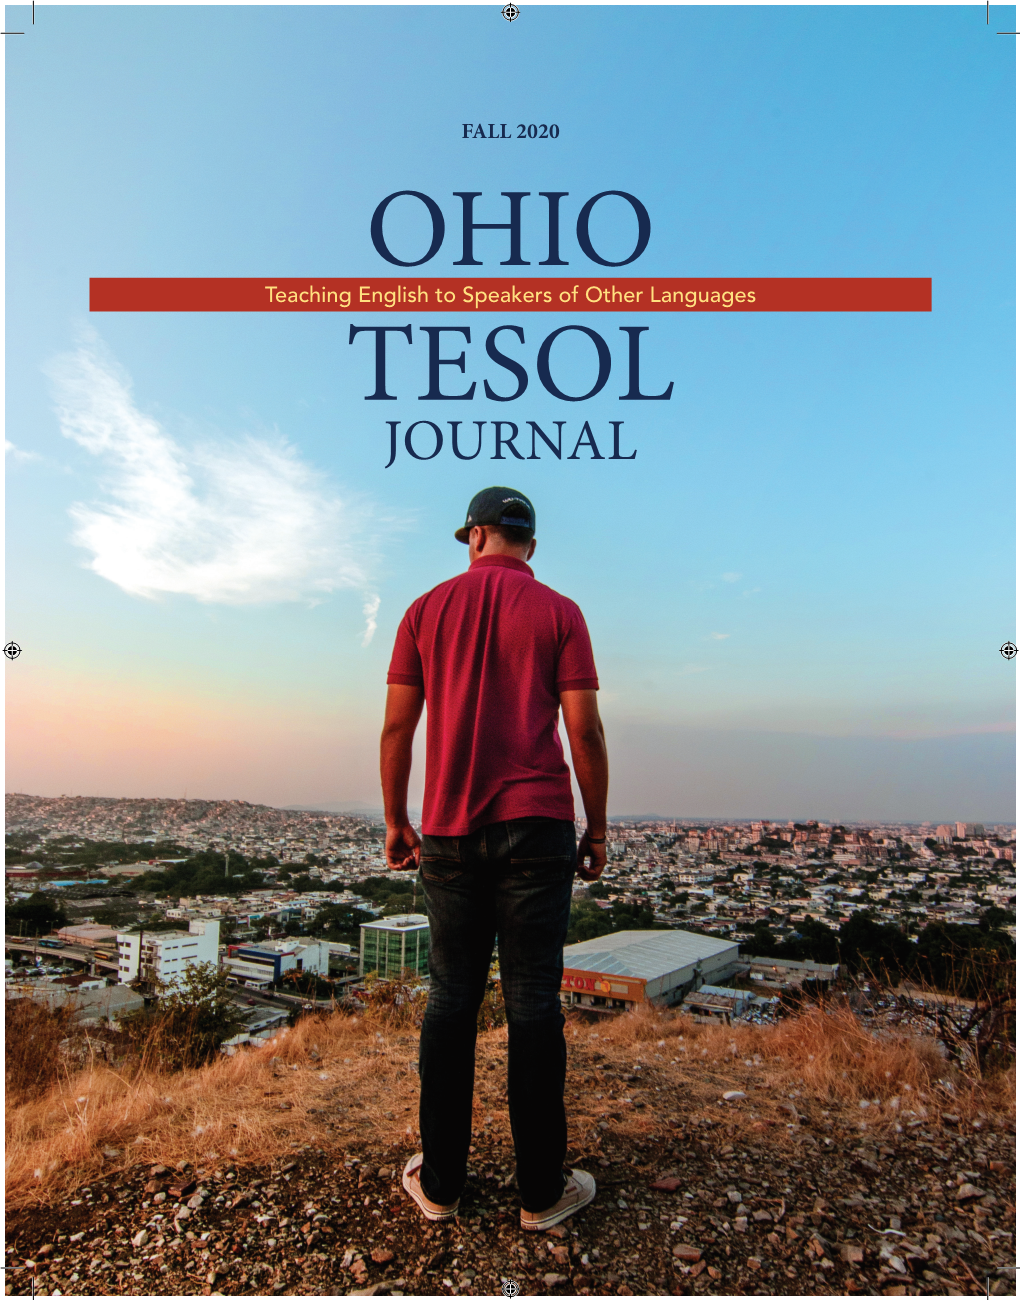 Ohio TESOL Journal, Fall 2020